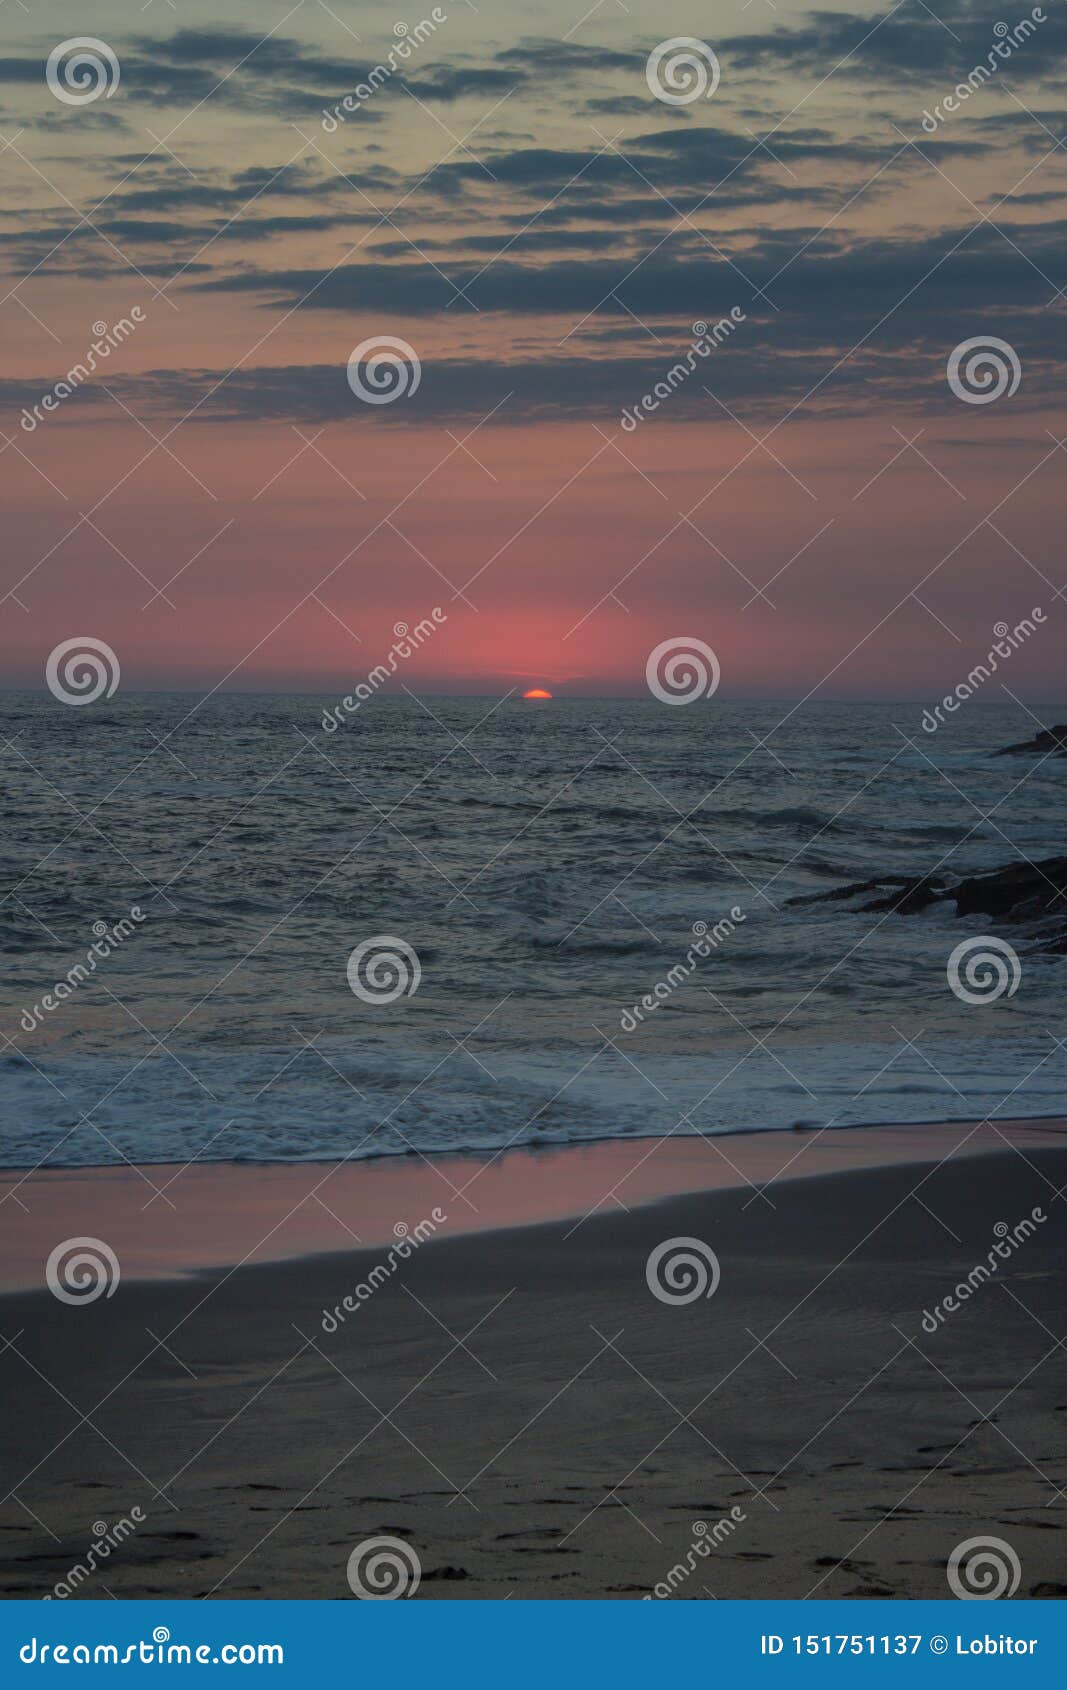 sun hiding on the horizon in mazunte beach